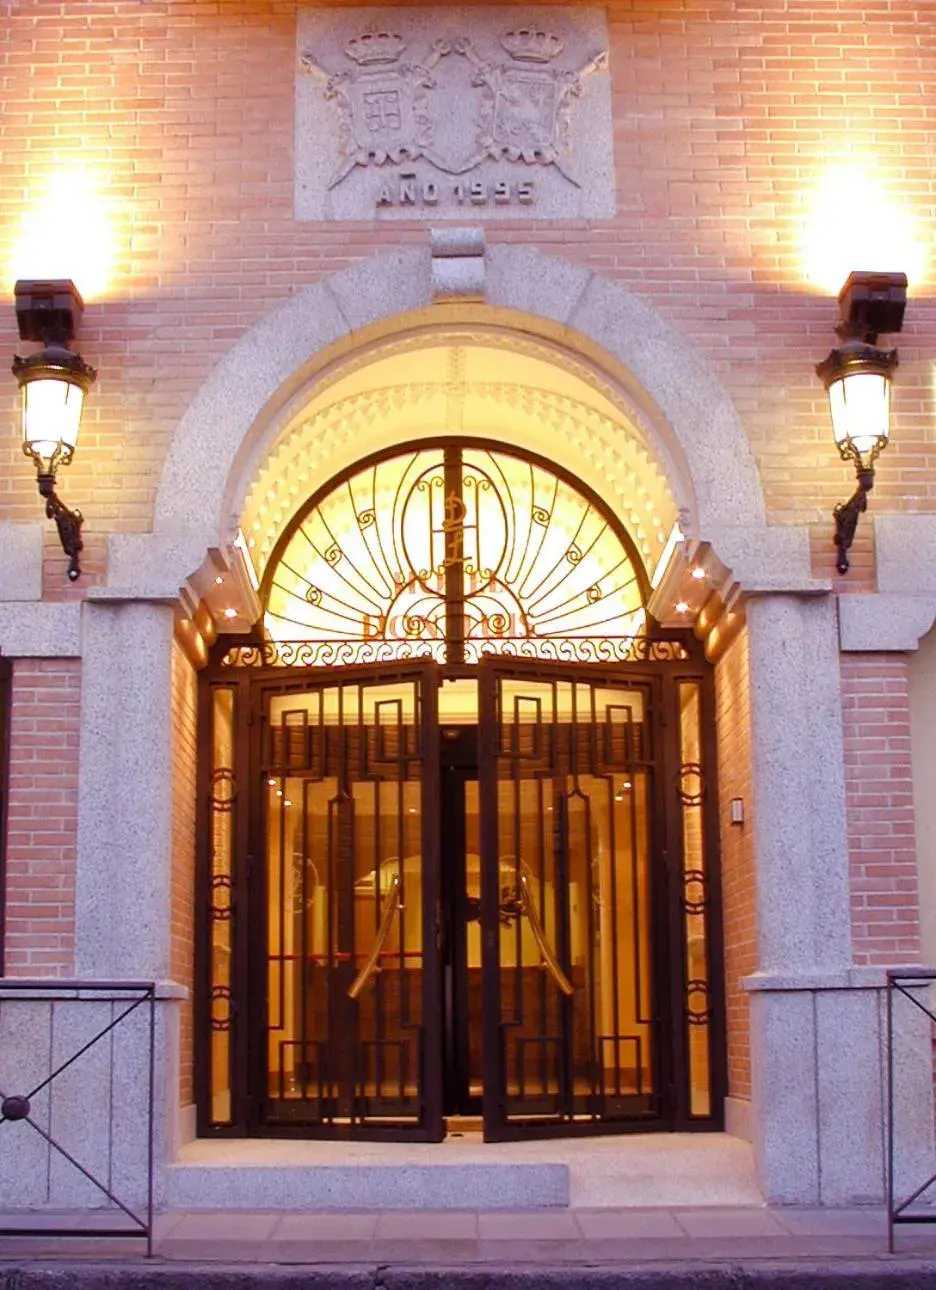 Facade/entrance in Hotel Don Luis